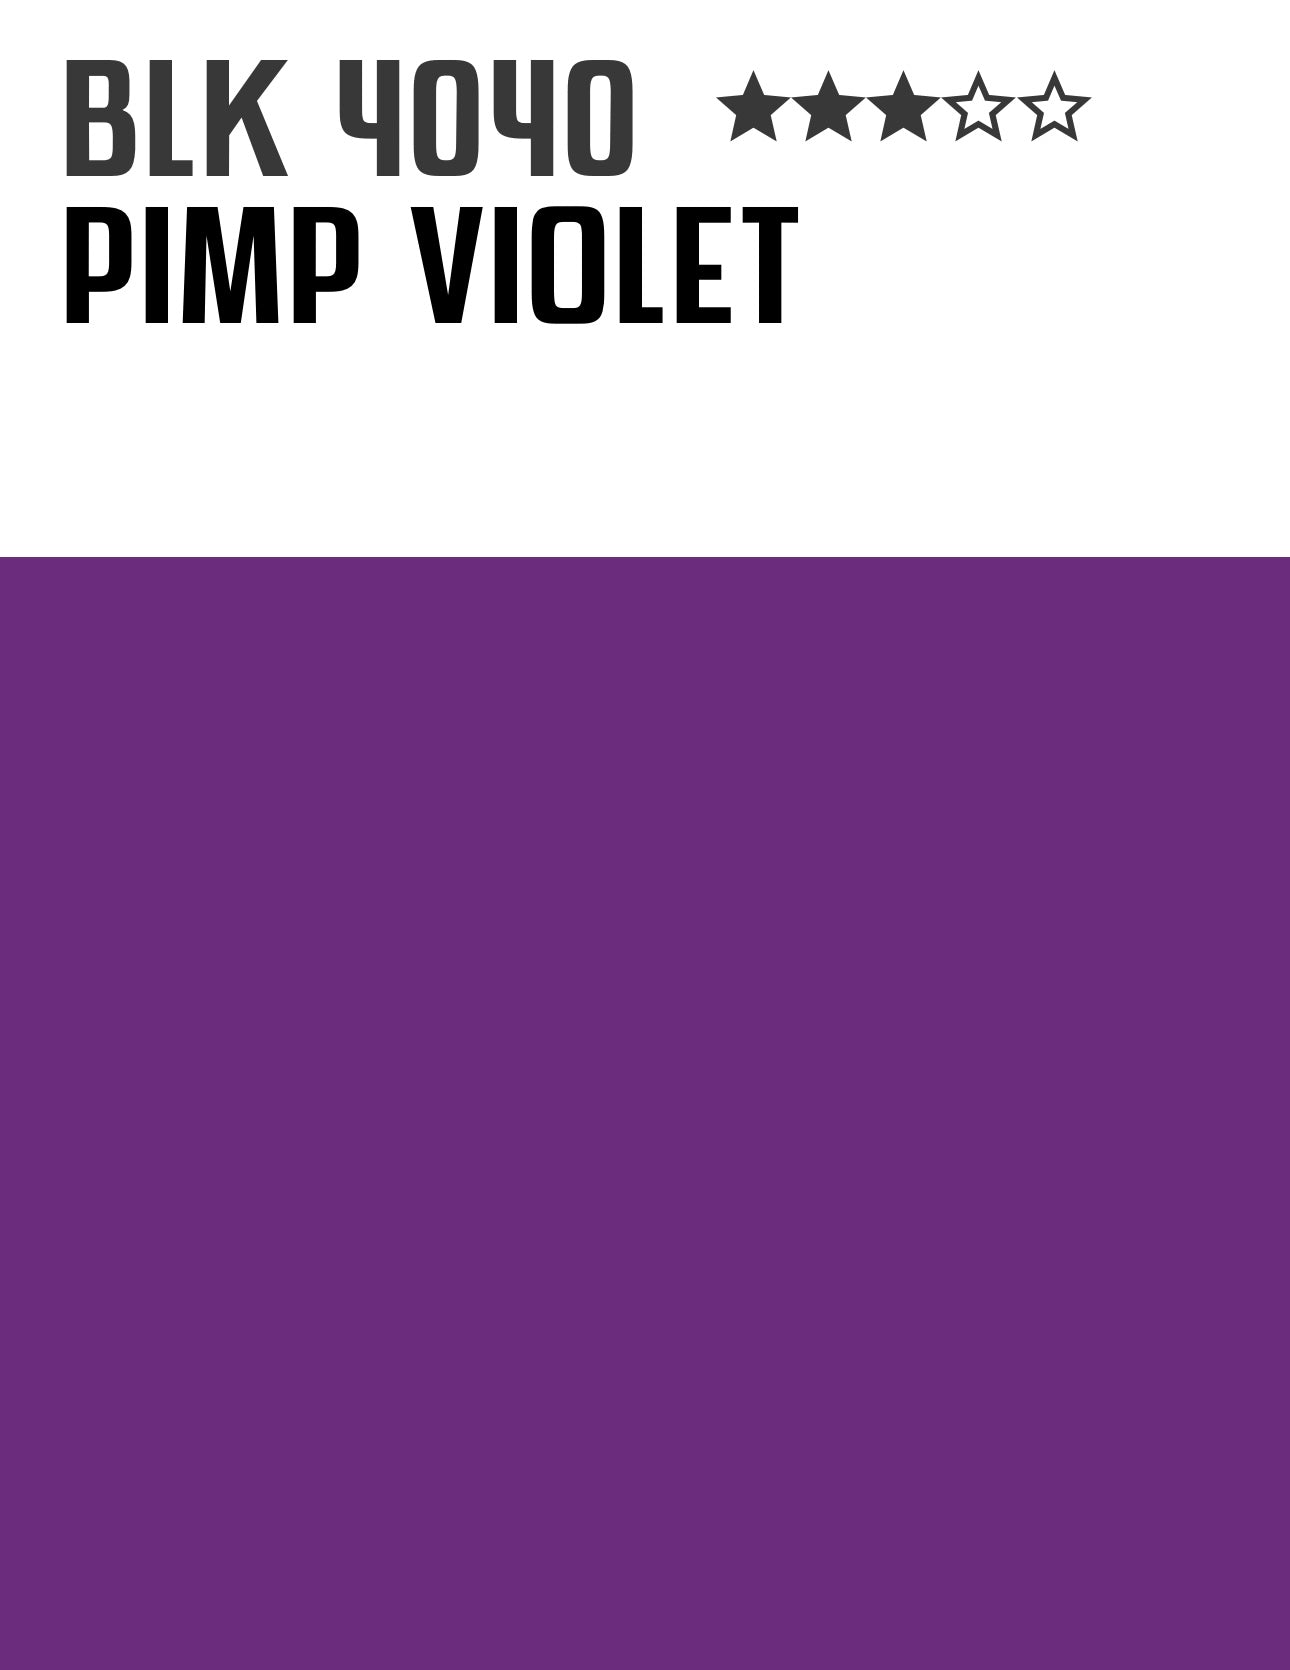 pimpviolet-montanablack